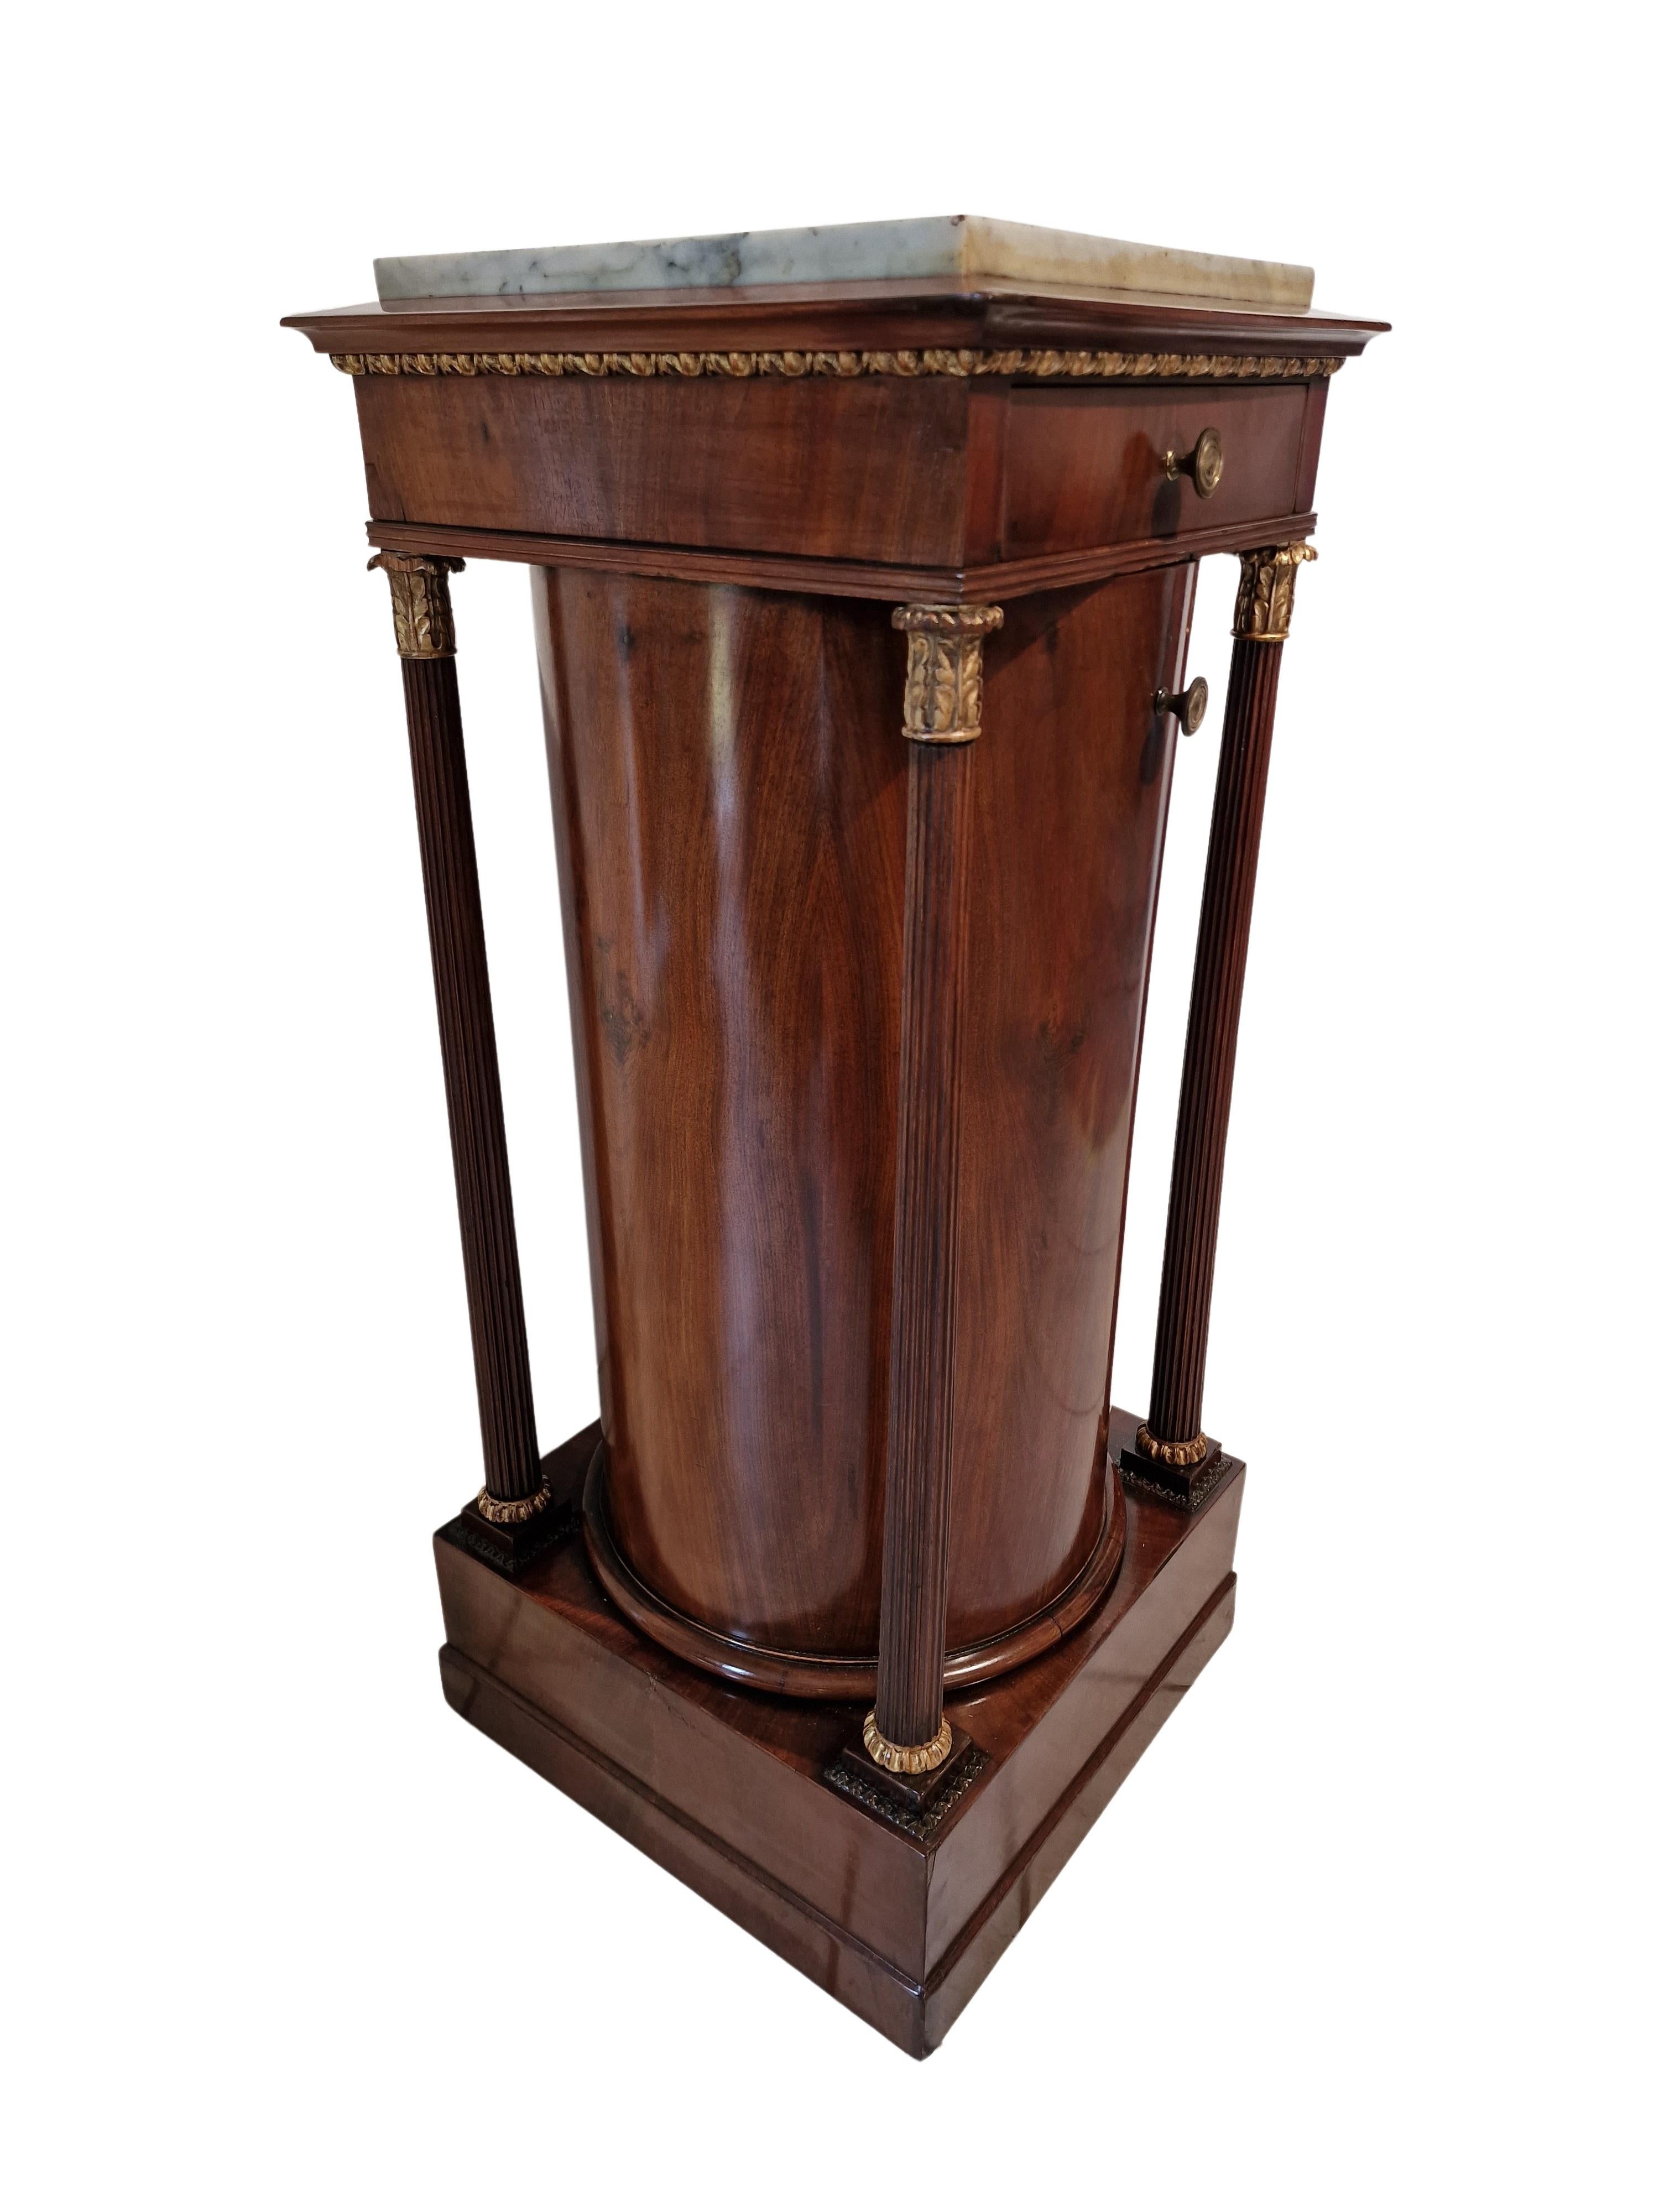 Magnifique commode à colonne, trumeau - un original de l'époque Empire, fabriqué vers 1810-15, en Italie. 

Ce meuble a une forme merveilleusement classique, avec une base, un corps rond avec une porte, quatre colonnes flanquantes, un tiroir et un